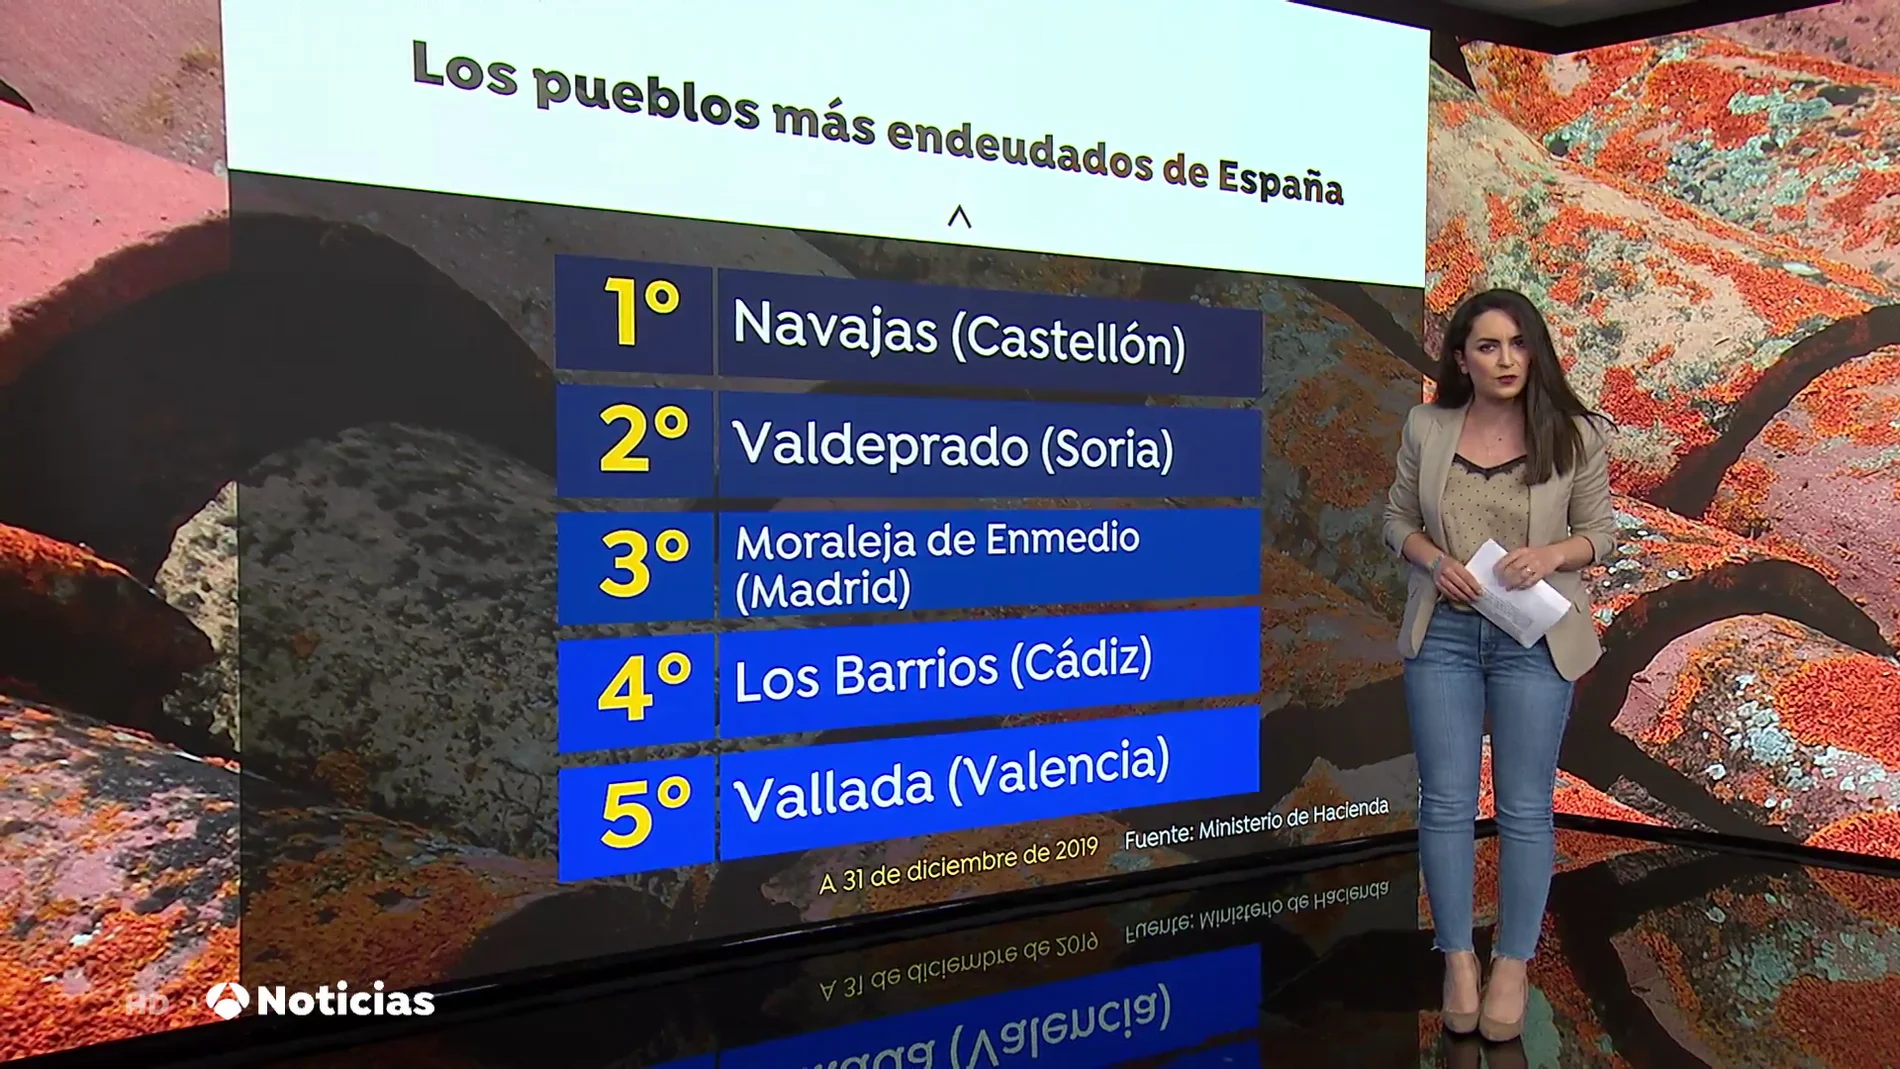 El ranking de los 5 pueblos más endeudados de España